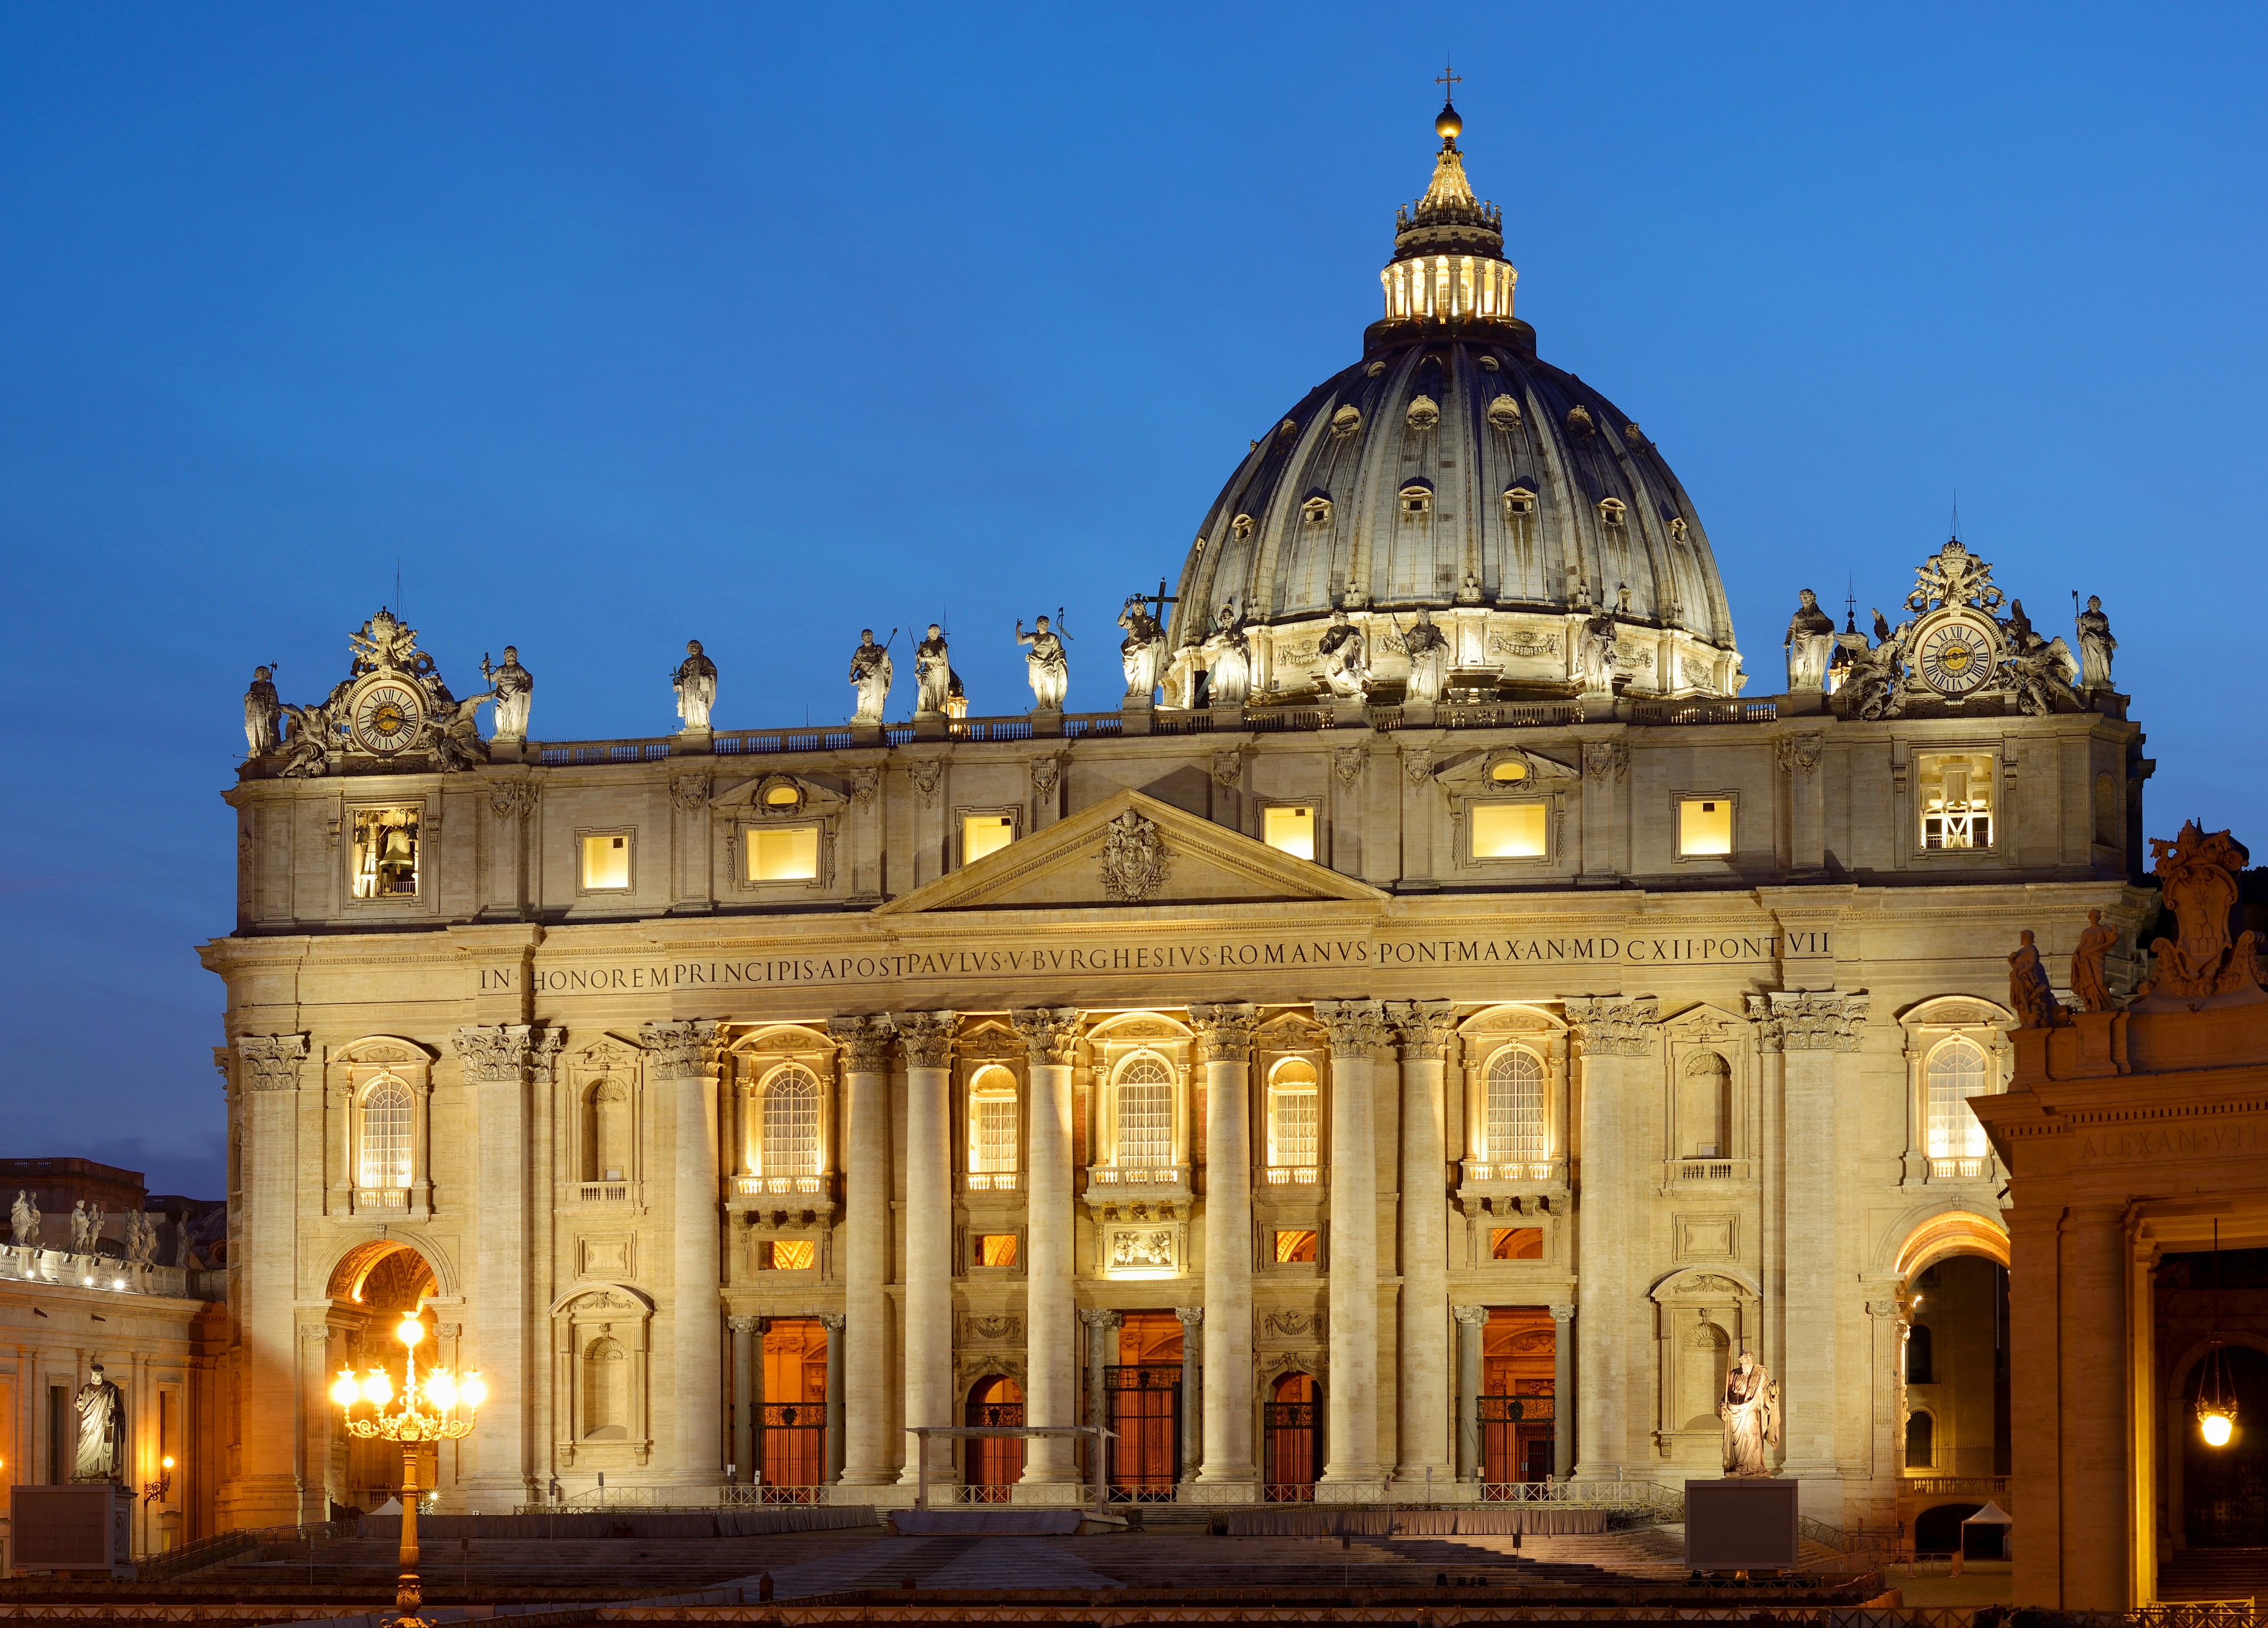 Saint Peter's Basilica at sunset